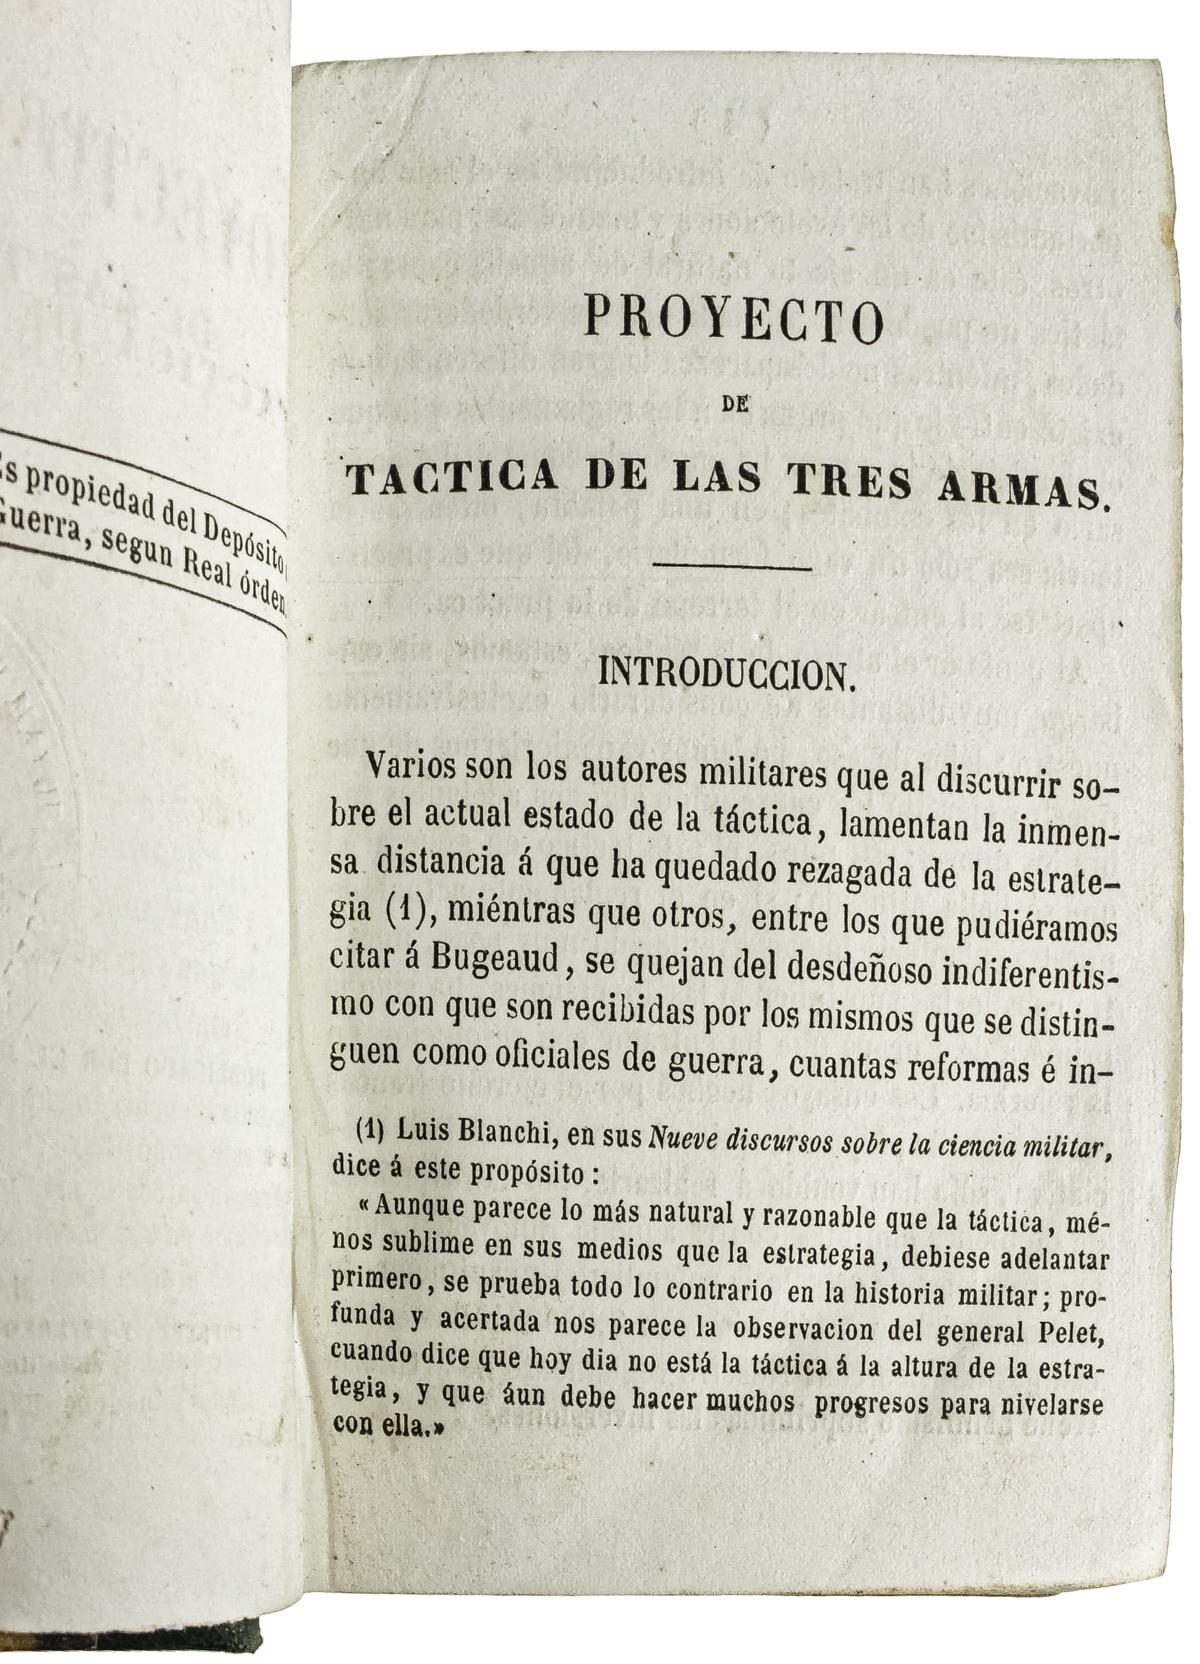 "EXTRACTO DEL PROYECTO DE TÁCTICA DE LAS TRES ARMAS"